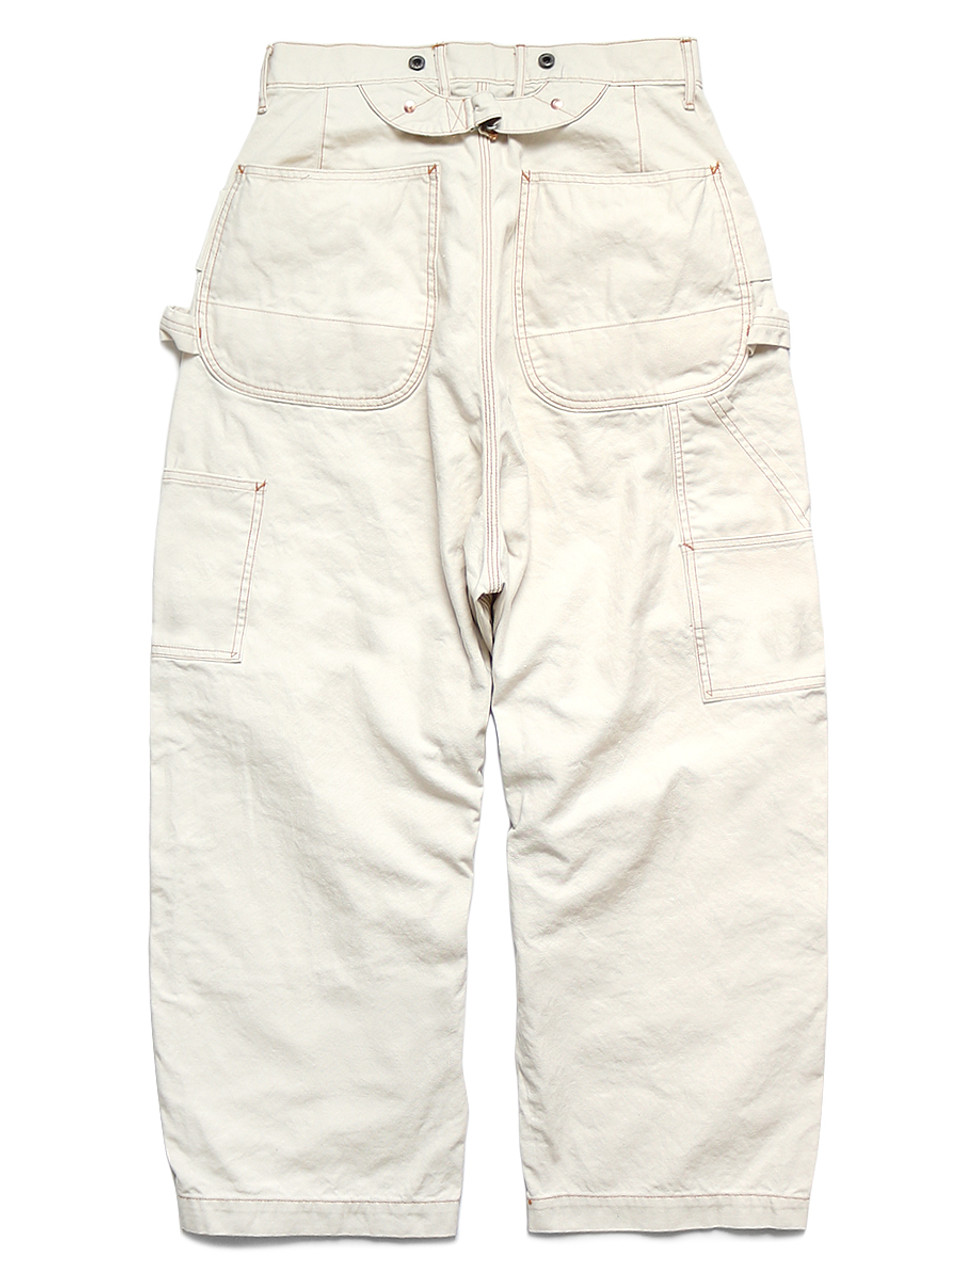 KAPITAL Pants/Shorts Thin Canvas Wide Lumber Pants